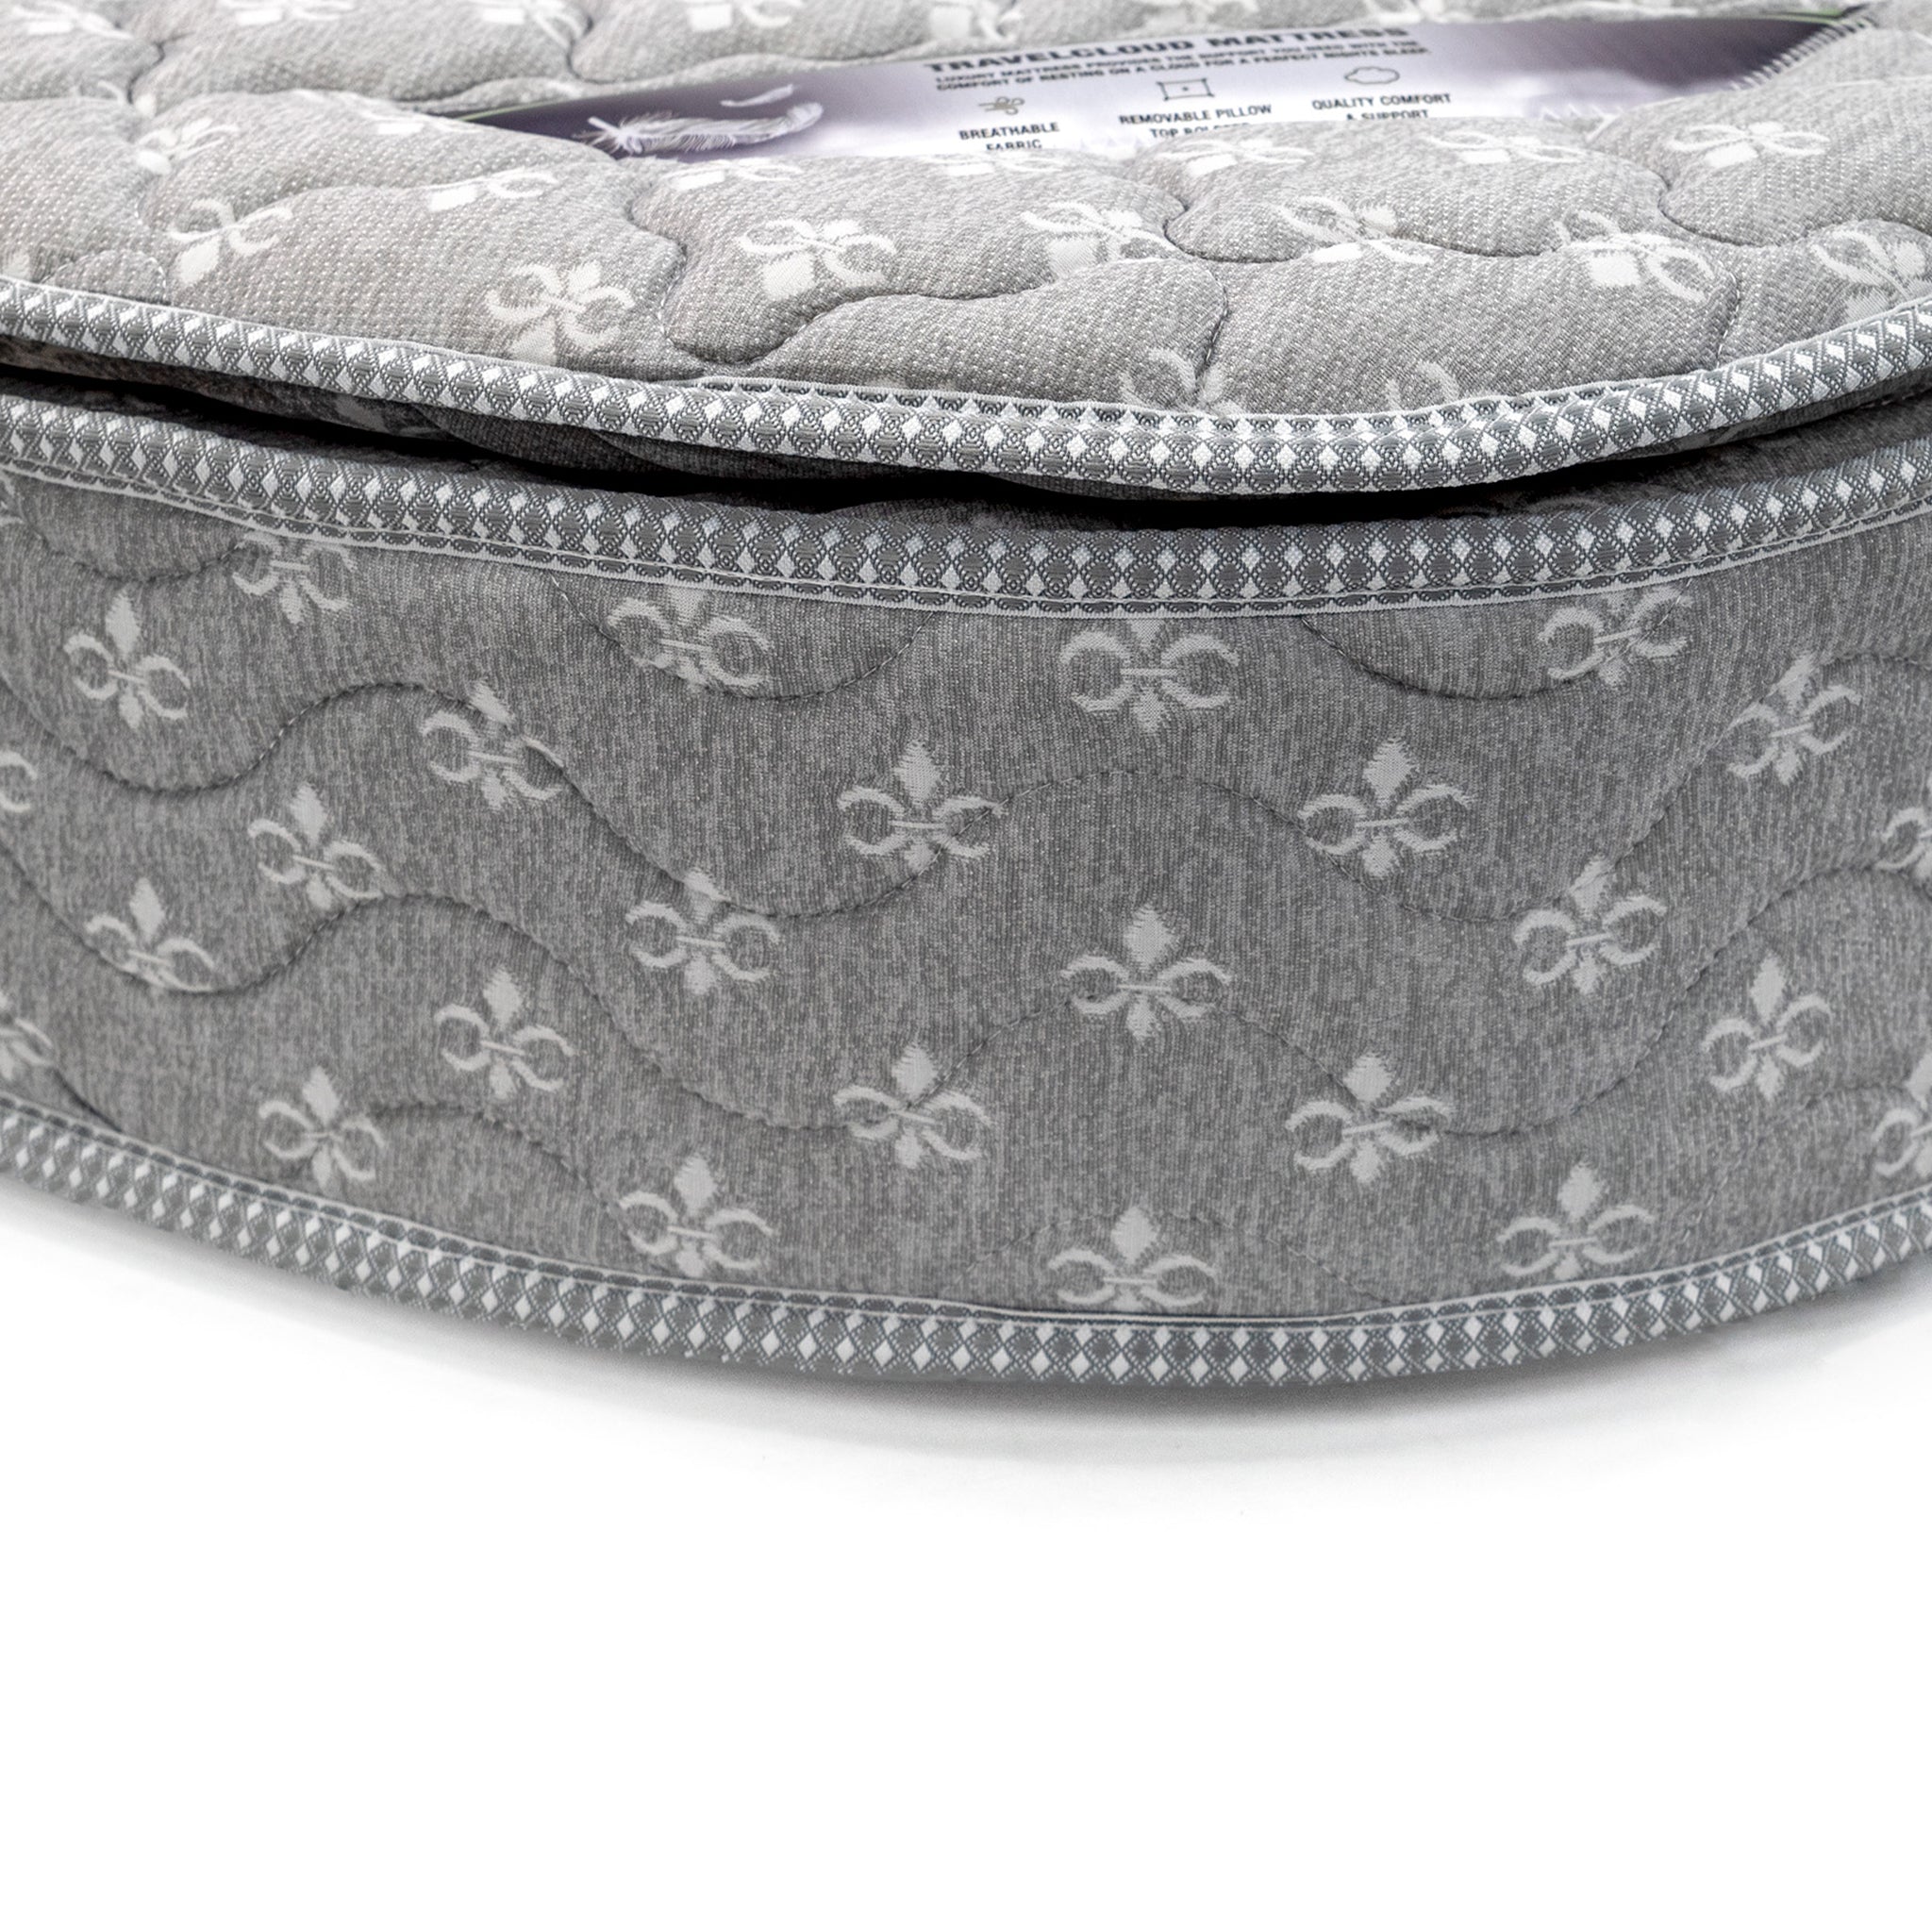 TravelCloud RV Queen Mattress - Pillow Top